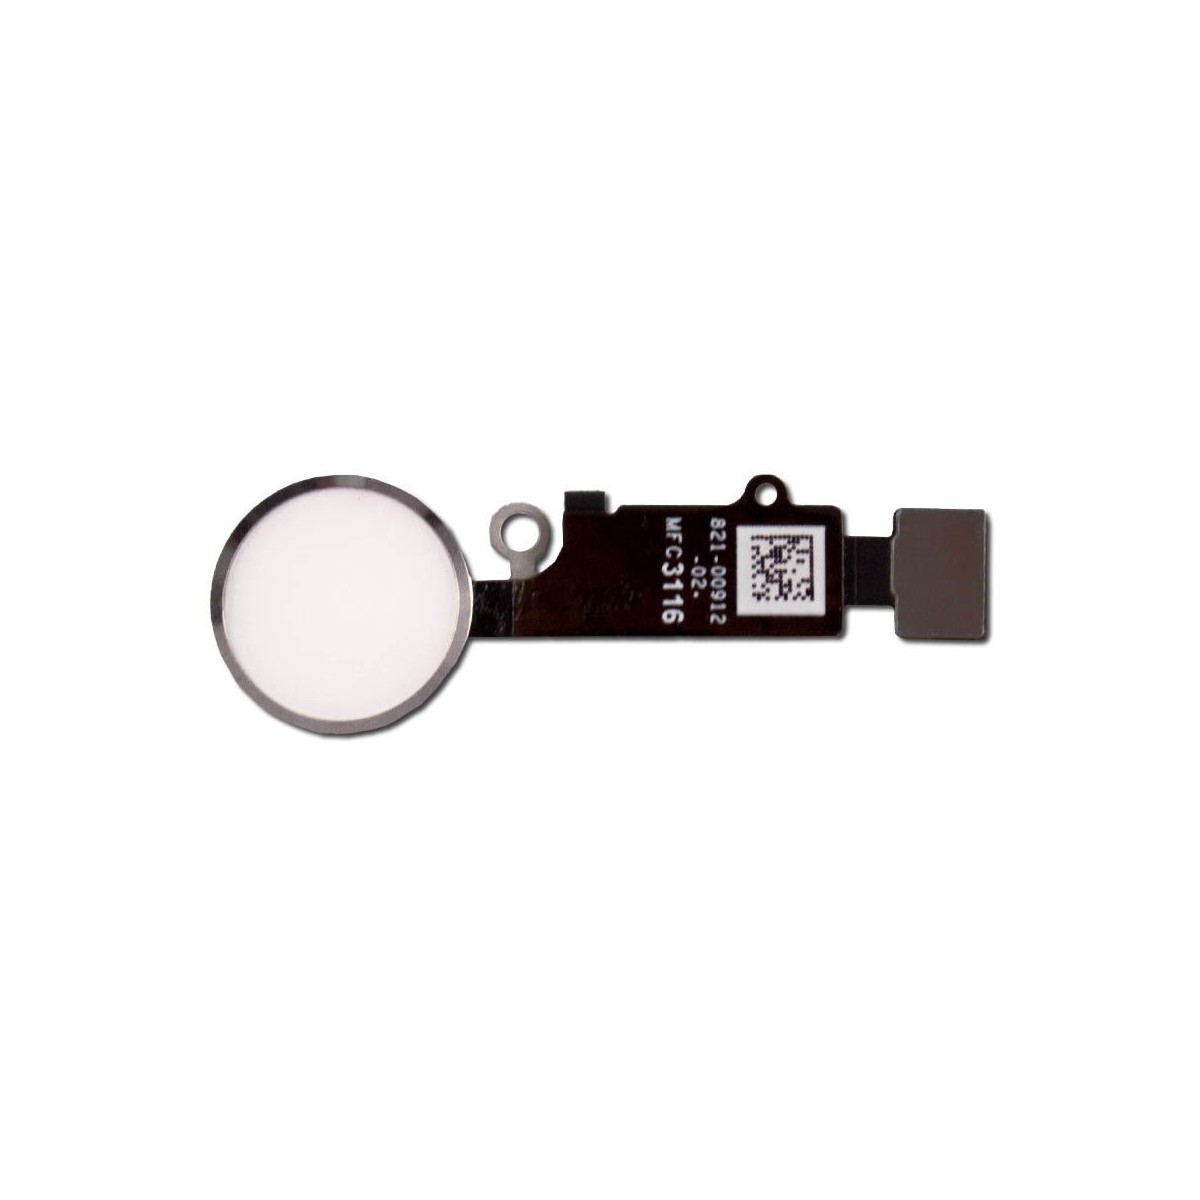 Bouton home blanc-argent compatible iPhone 7 Plus (non fonctionnel)